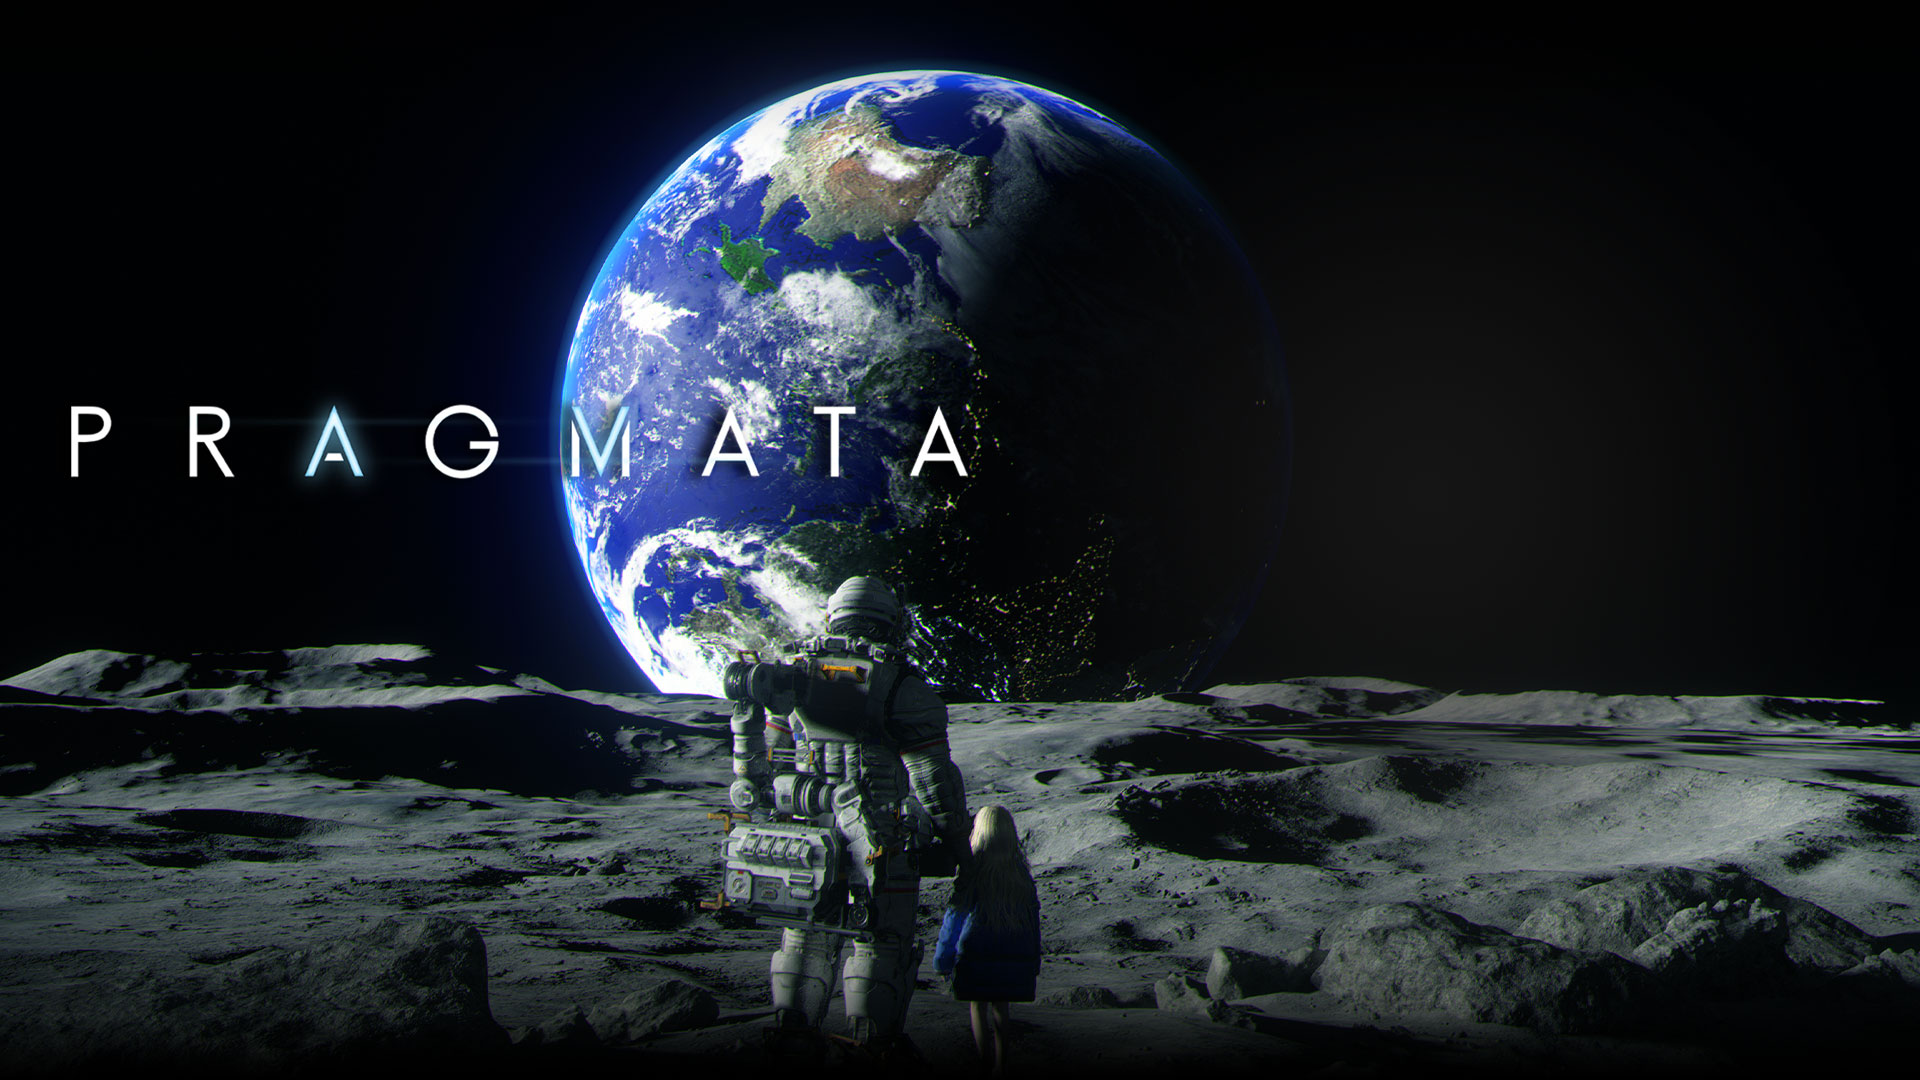 Pragmata, Ayda birlikte duran bir astronot ve genç bir kız dünyaya bakıyor